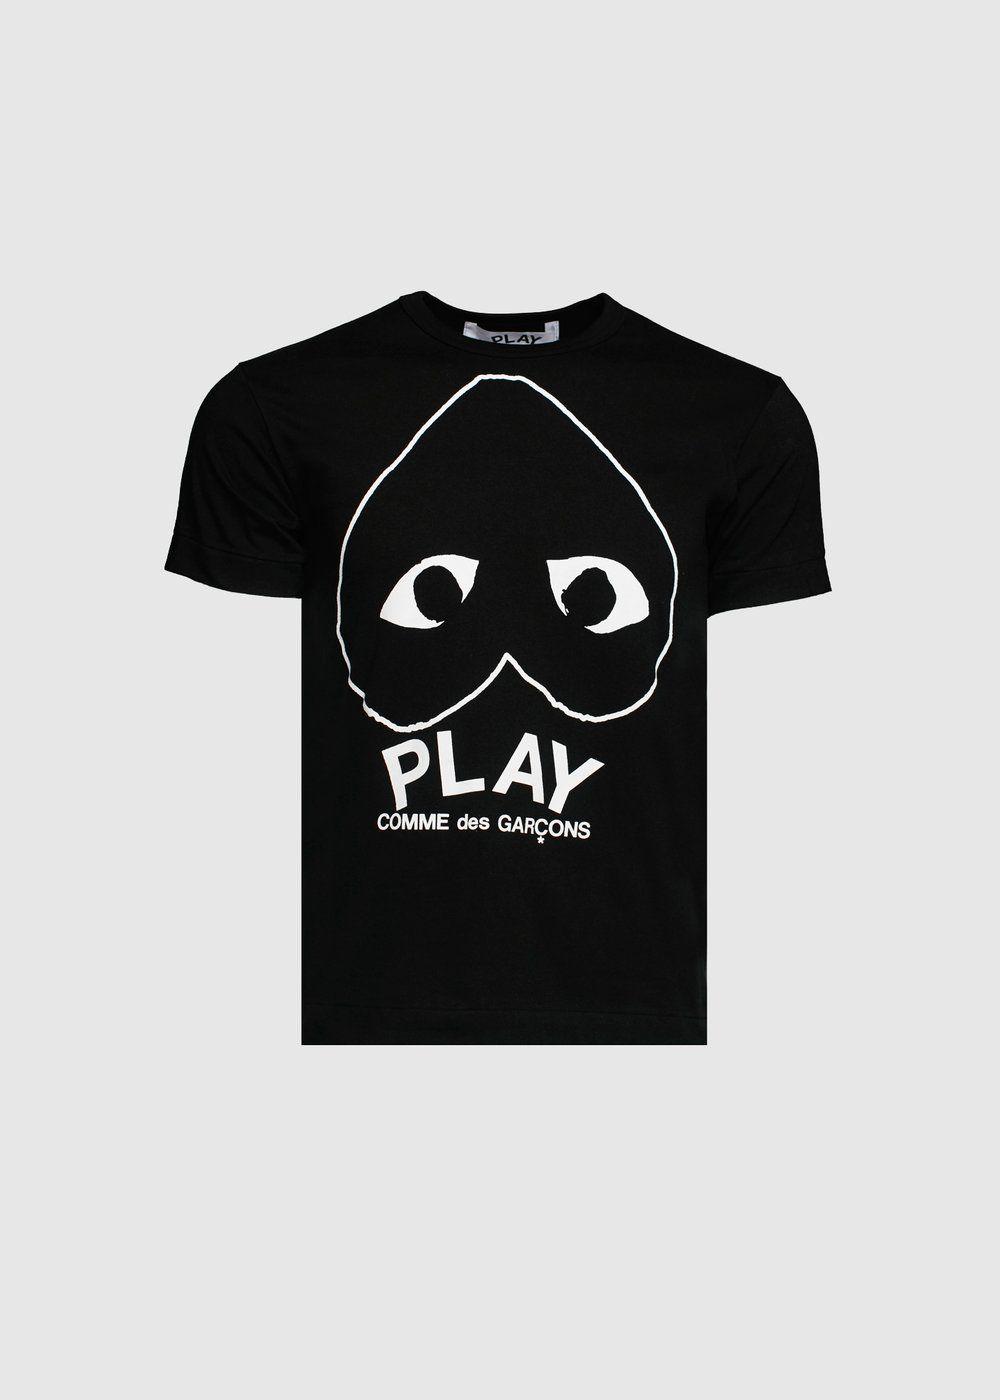 CDG Play Logo - CDG Play: Upside Down Heart T Shirt [Black]